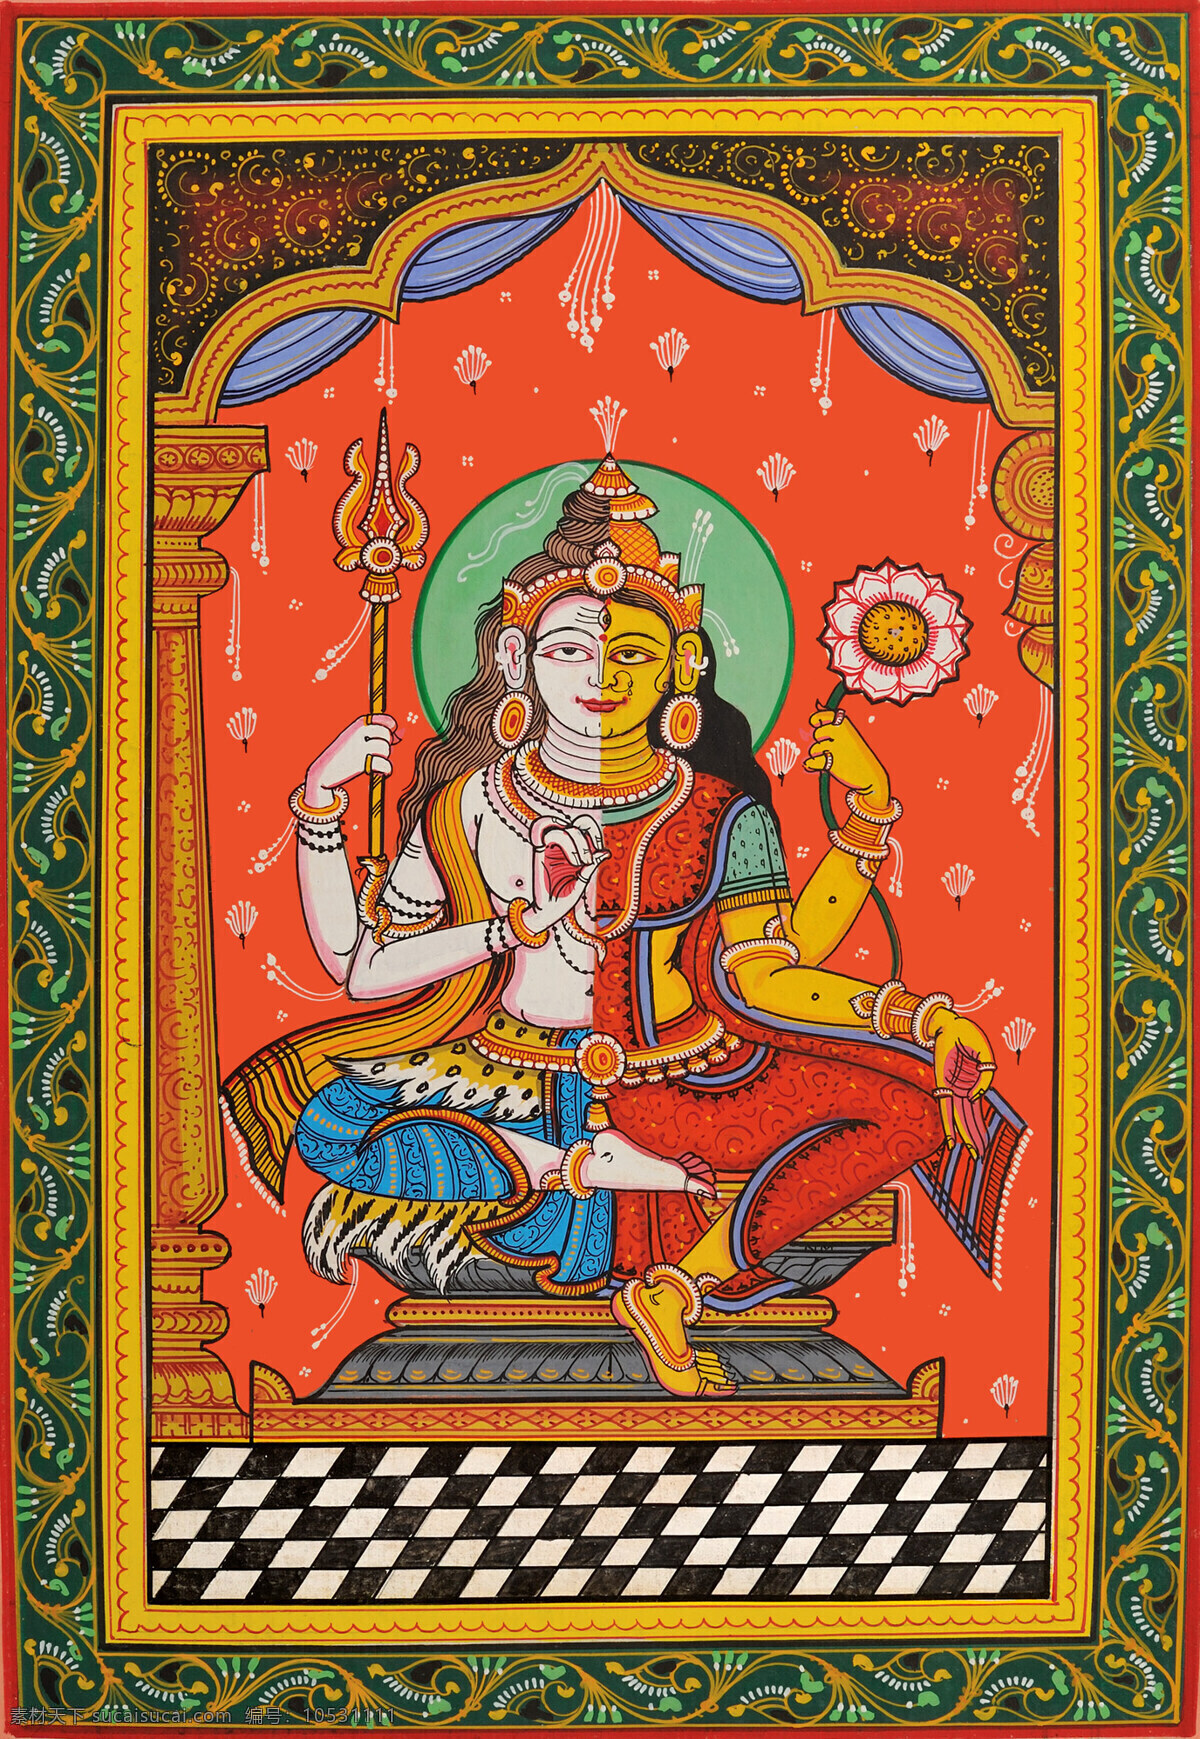 印度神像 人物 神像 宗教信仰 宗教艺术 文化艺术 传统文化